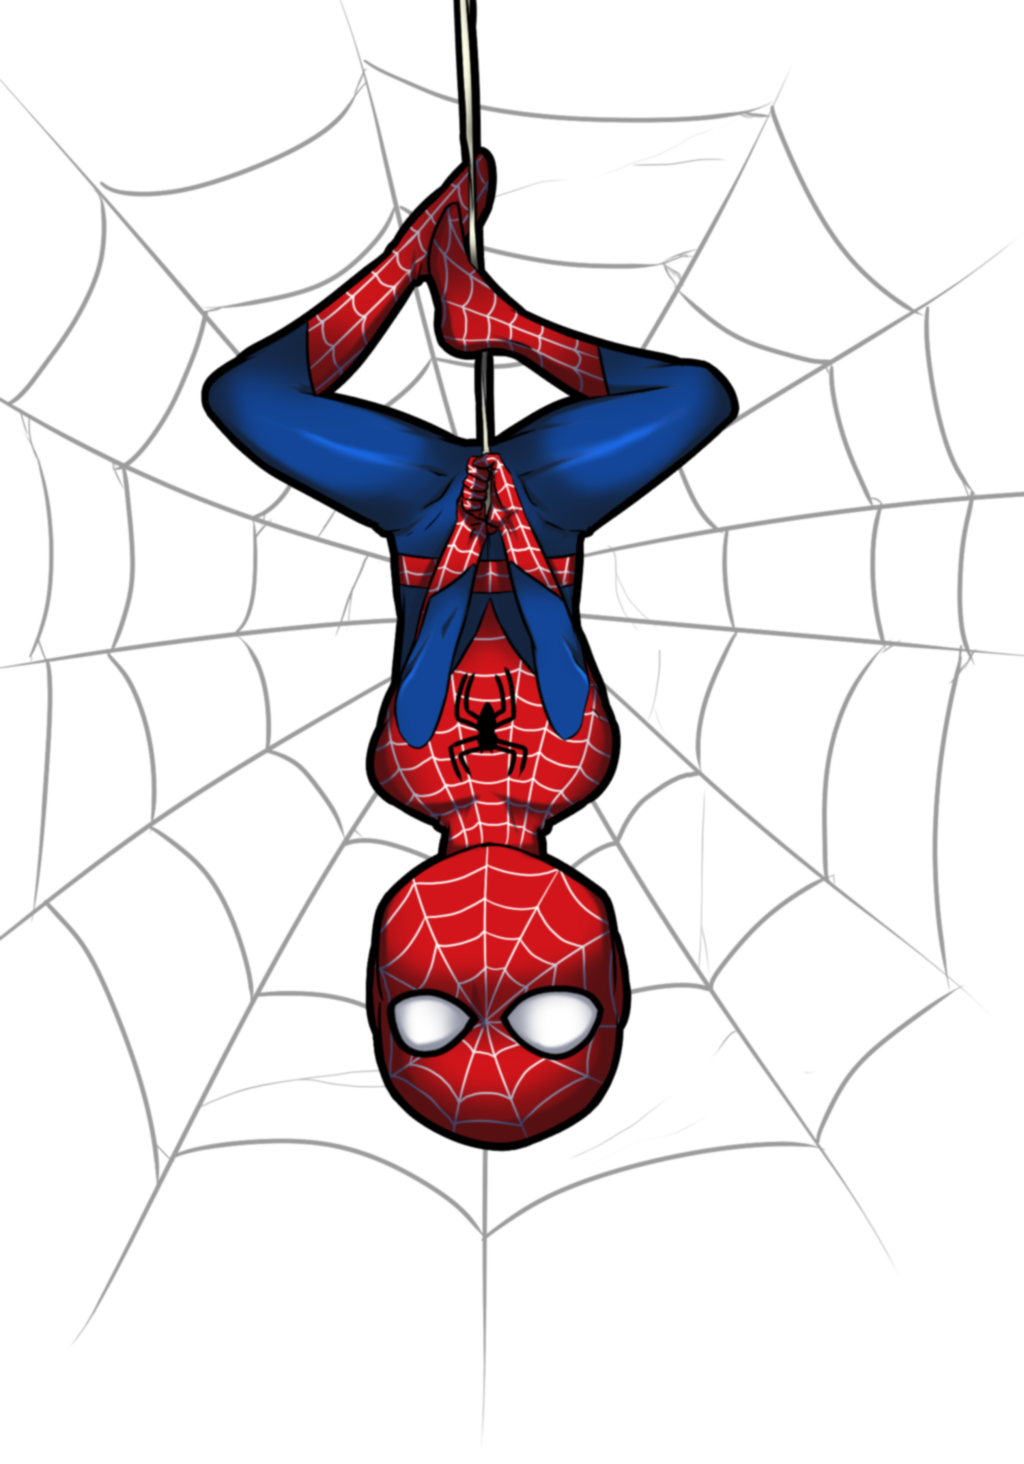 El Rodaje De Amazing Spider Man Continua Pero Parece Que Hay Problemas